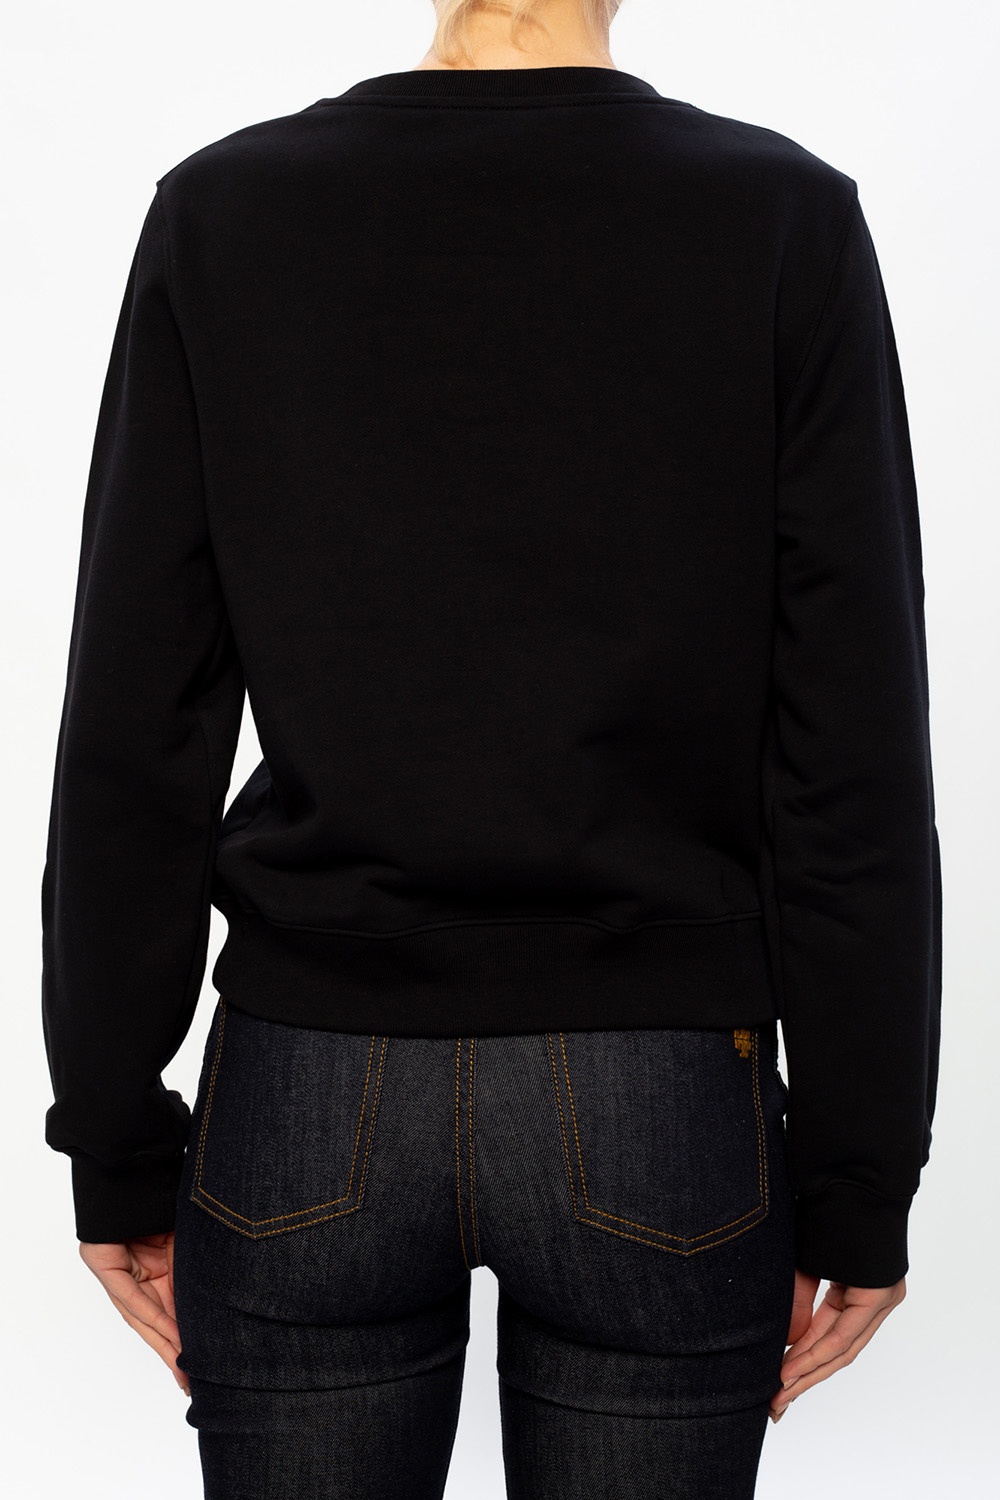 Moschino Sweatshirt with logo | Women's Clothing | IetpShops